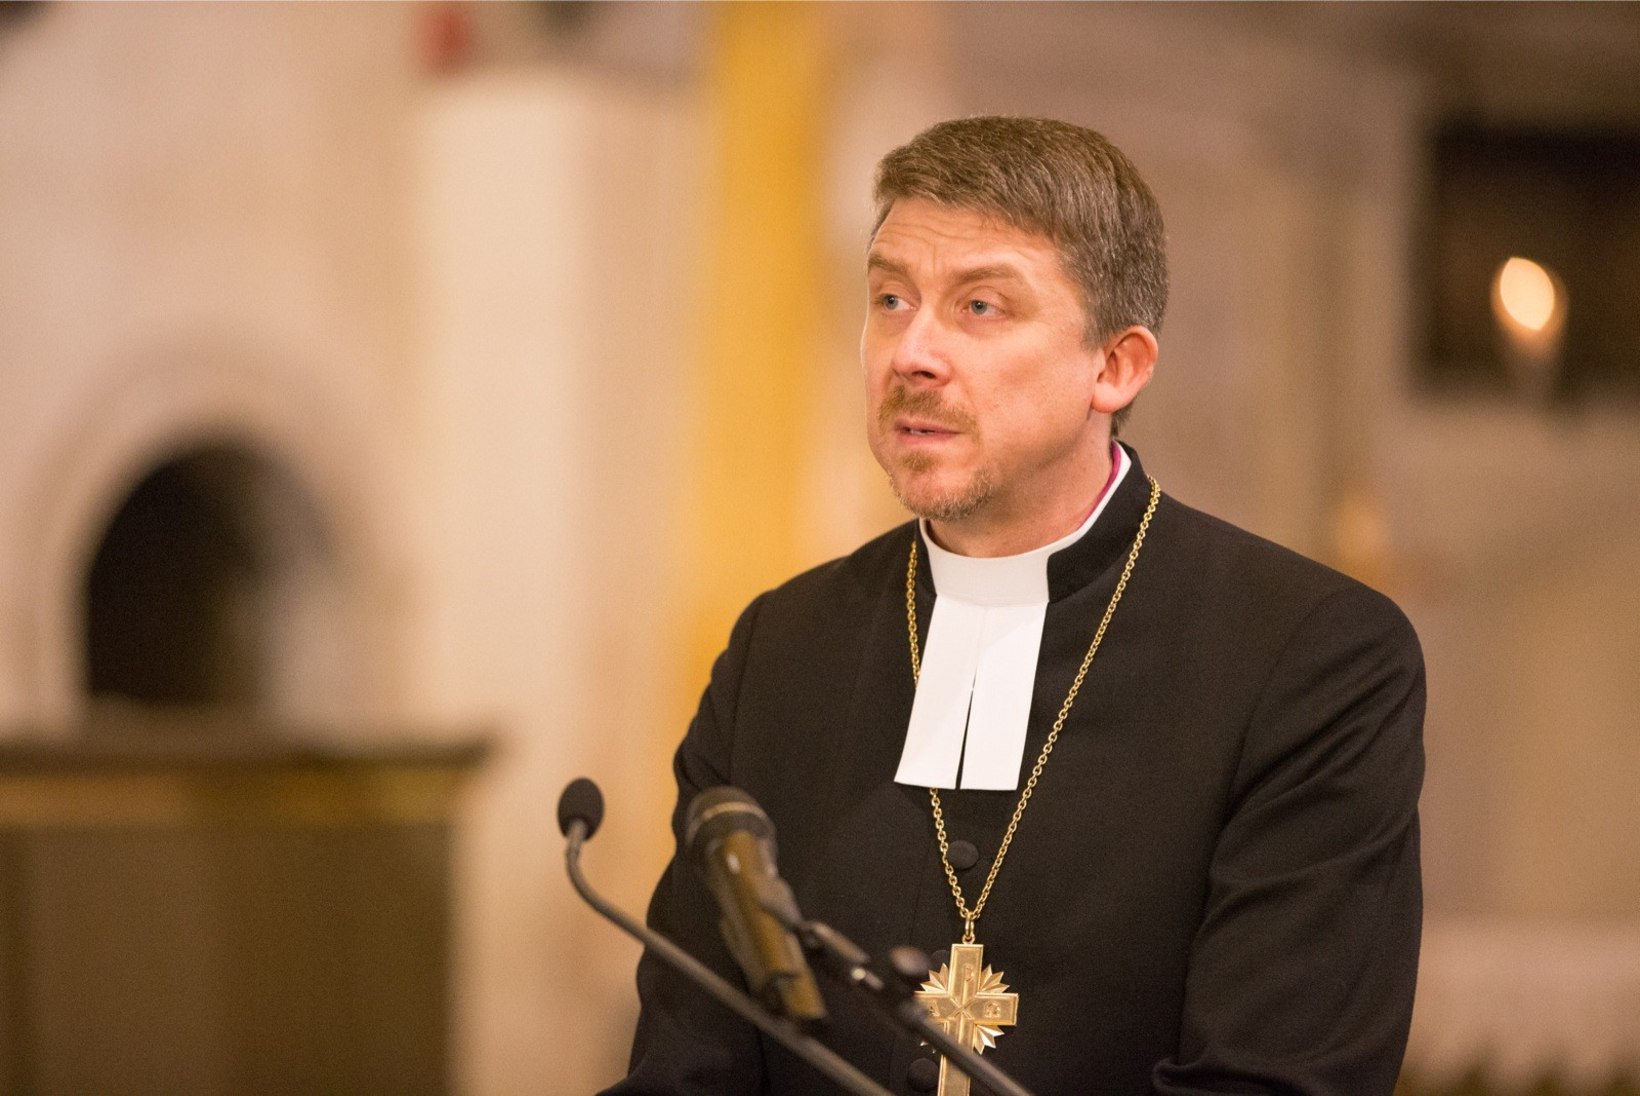 Peapiiskop Urmas Viilma hakkab giidiks: mõte tekkis Tiit Pruuliga vesteldes